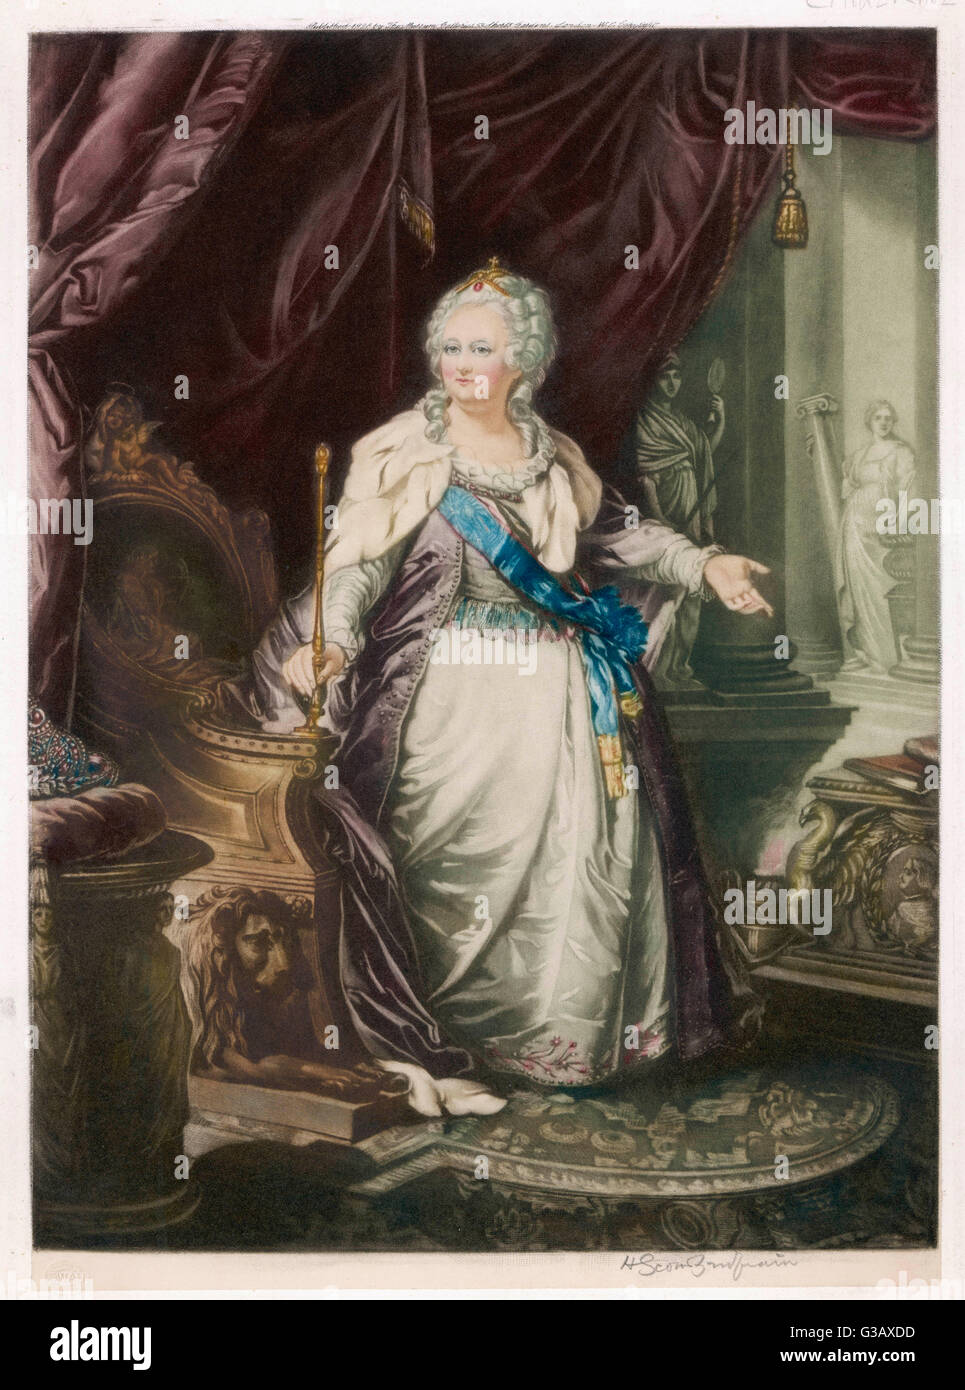 Caterina la Grande imperatrice di Russia (1762-96) Data: 1729 - 1796 Foto Stock